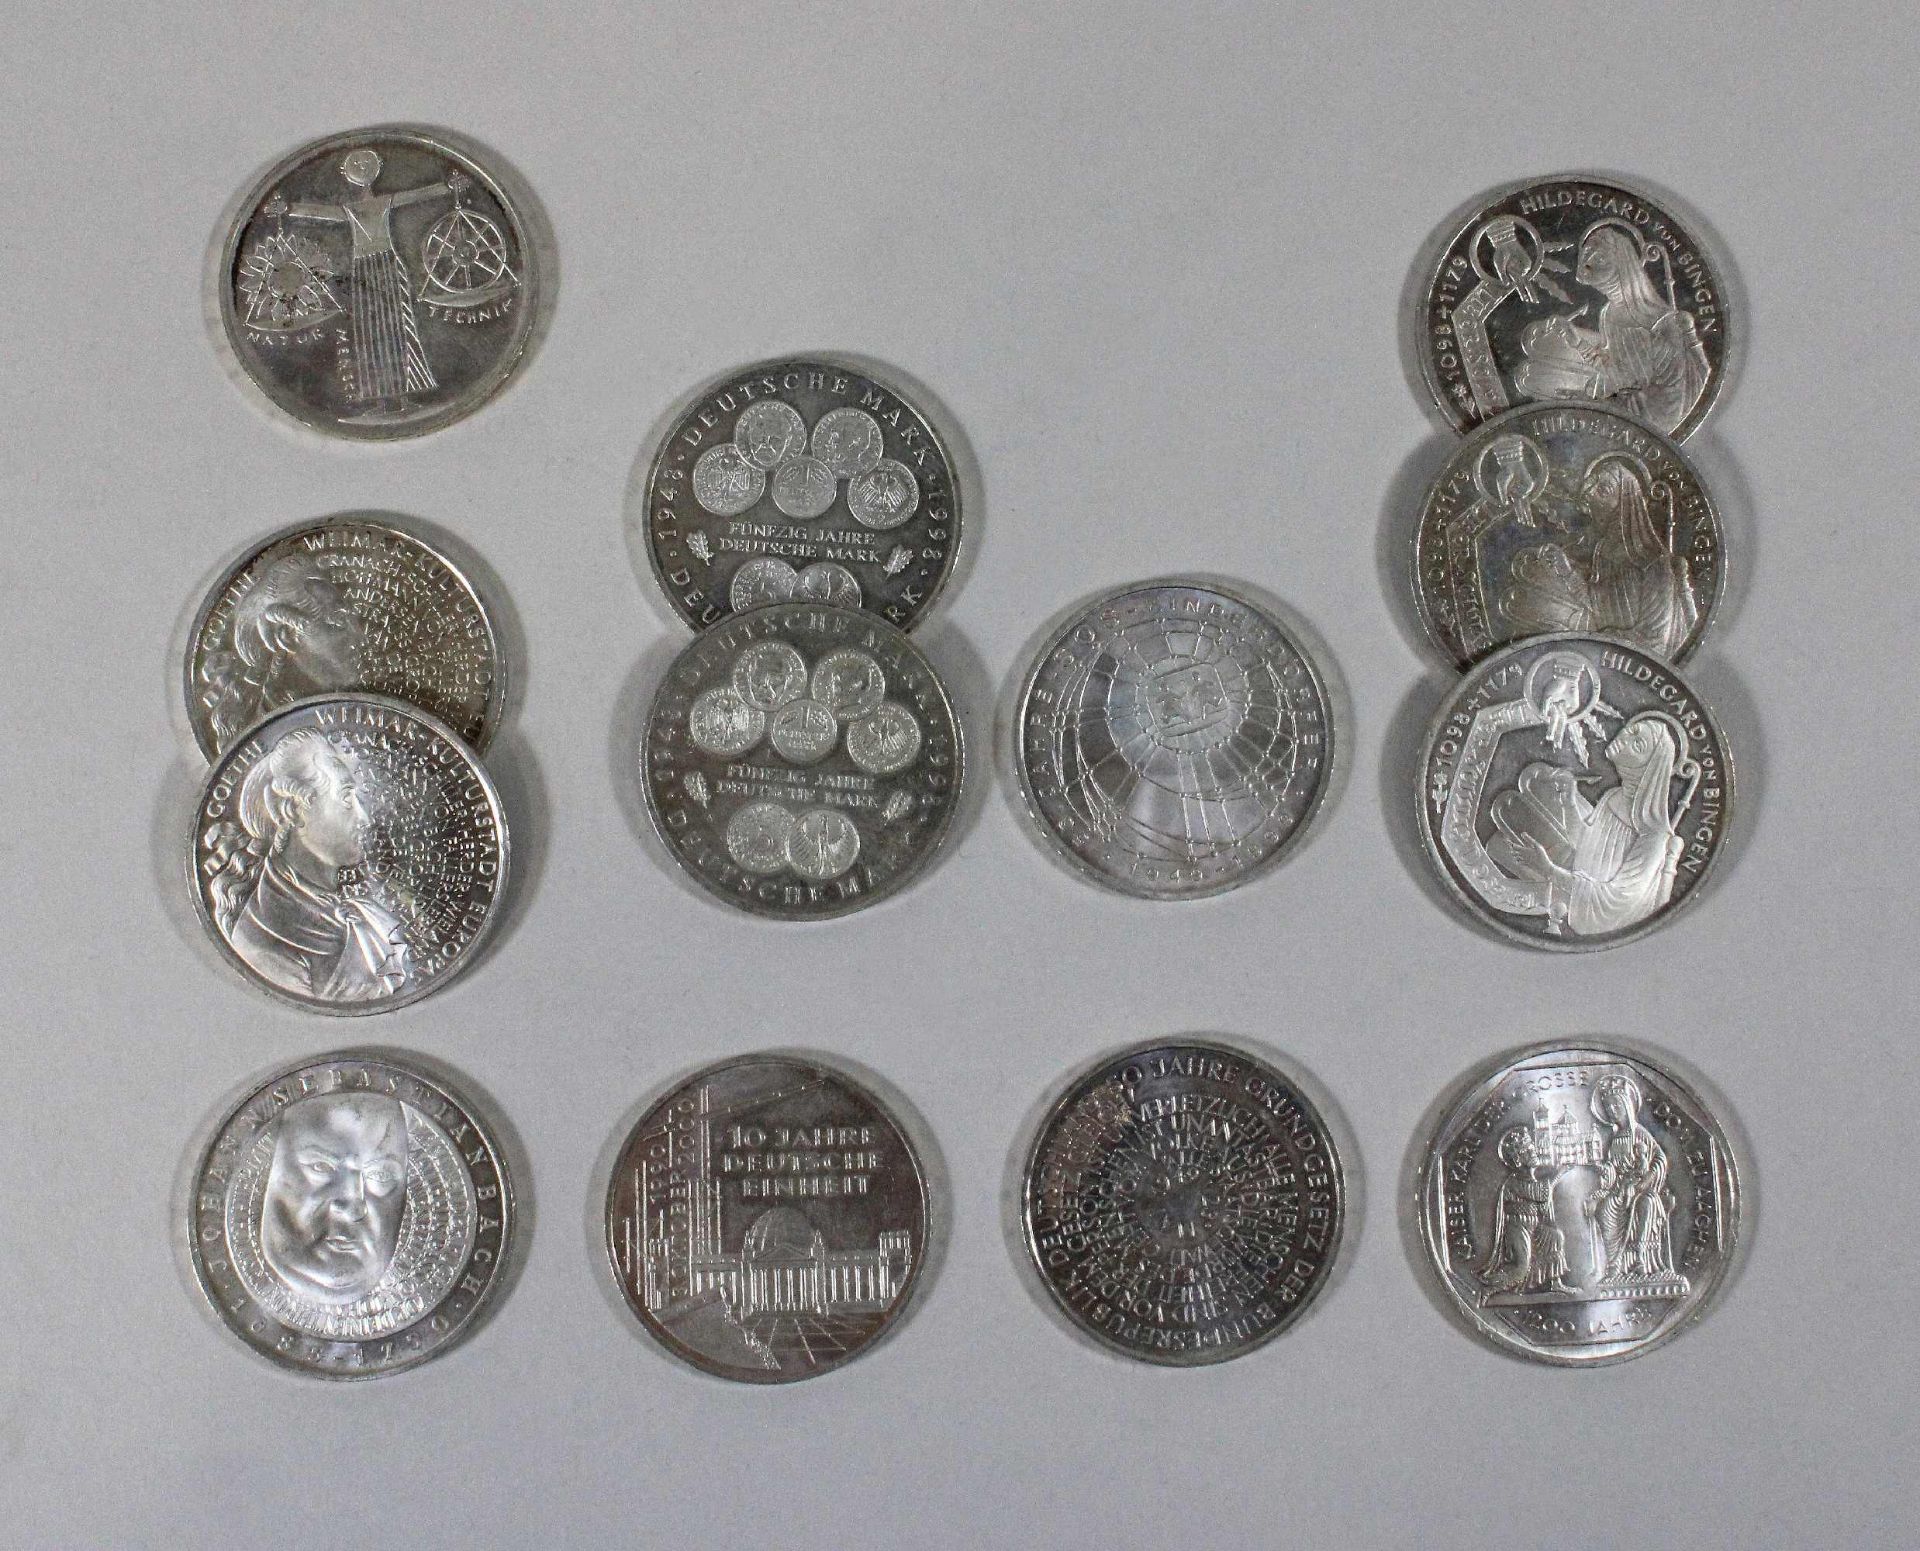 13 tlg. Münzen, Silber, vier aus der Jahr 1999, 1x 50 Jahre - SOS - Kinderdorfer, 10 Mark, 2x Weimar